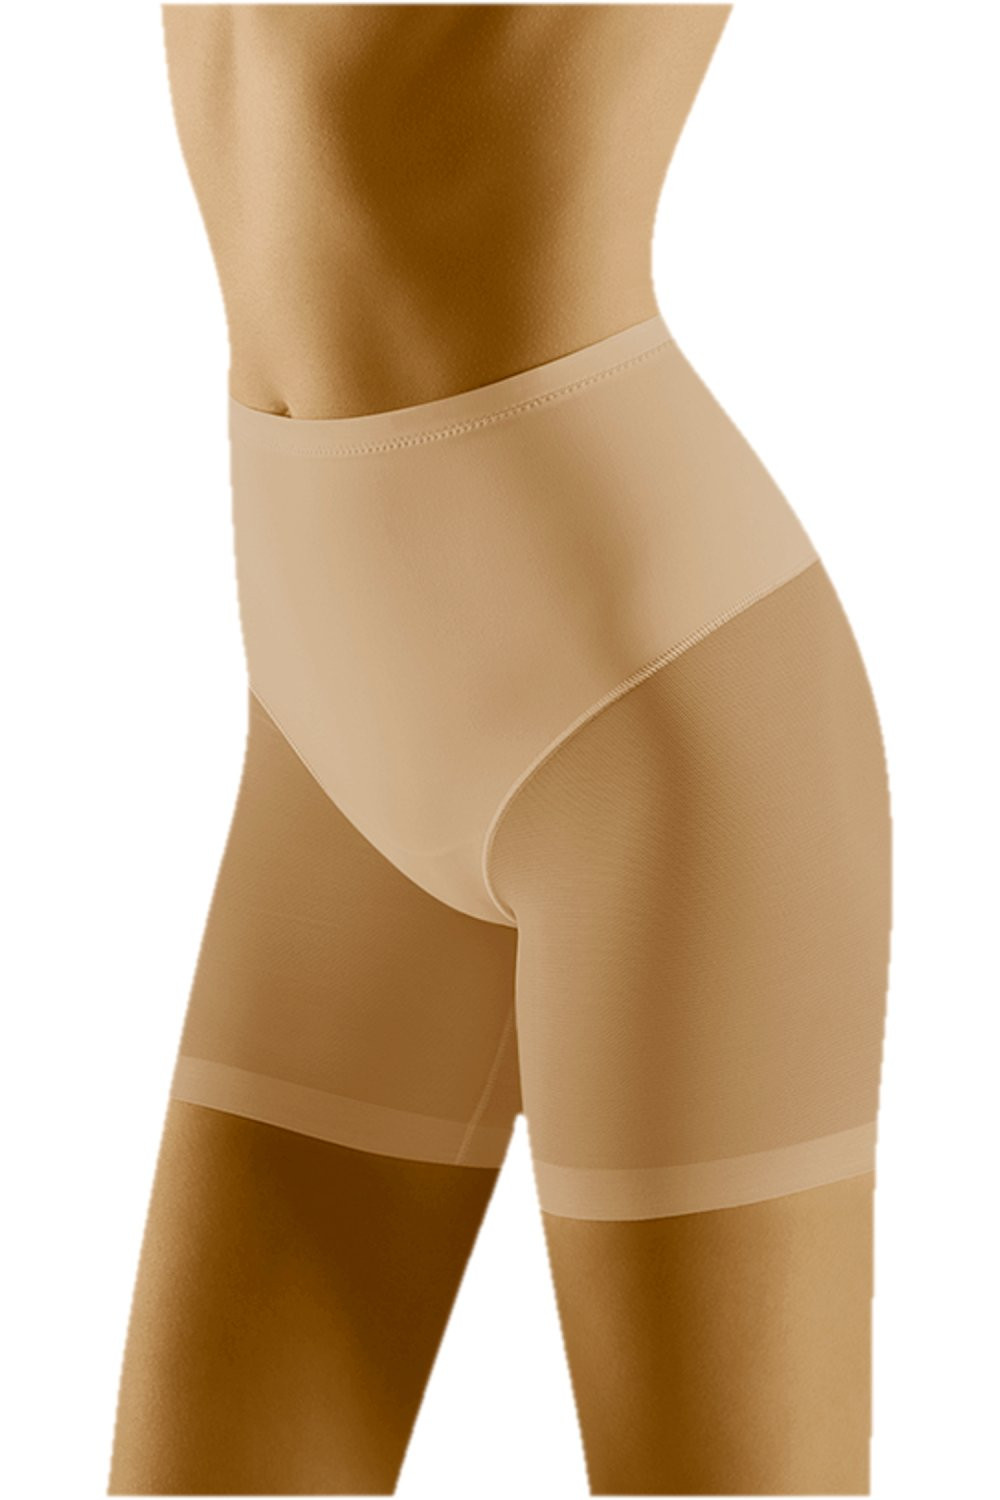 Stahovací kalhotky model 17180326 beige WOLBAR - Wol-Bar Barva: Béžová, Velikost: L